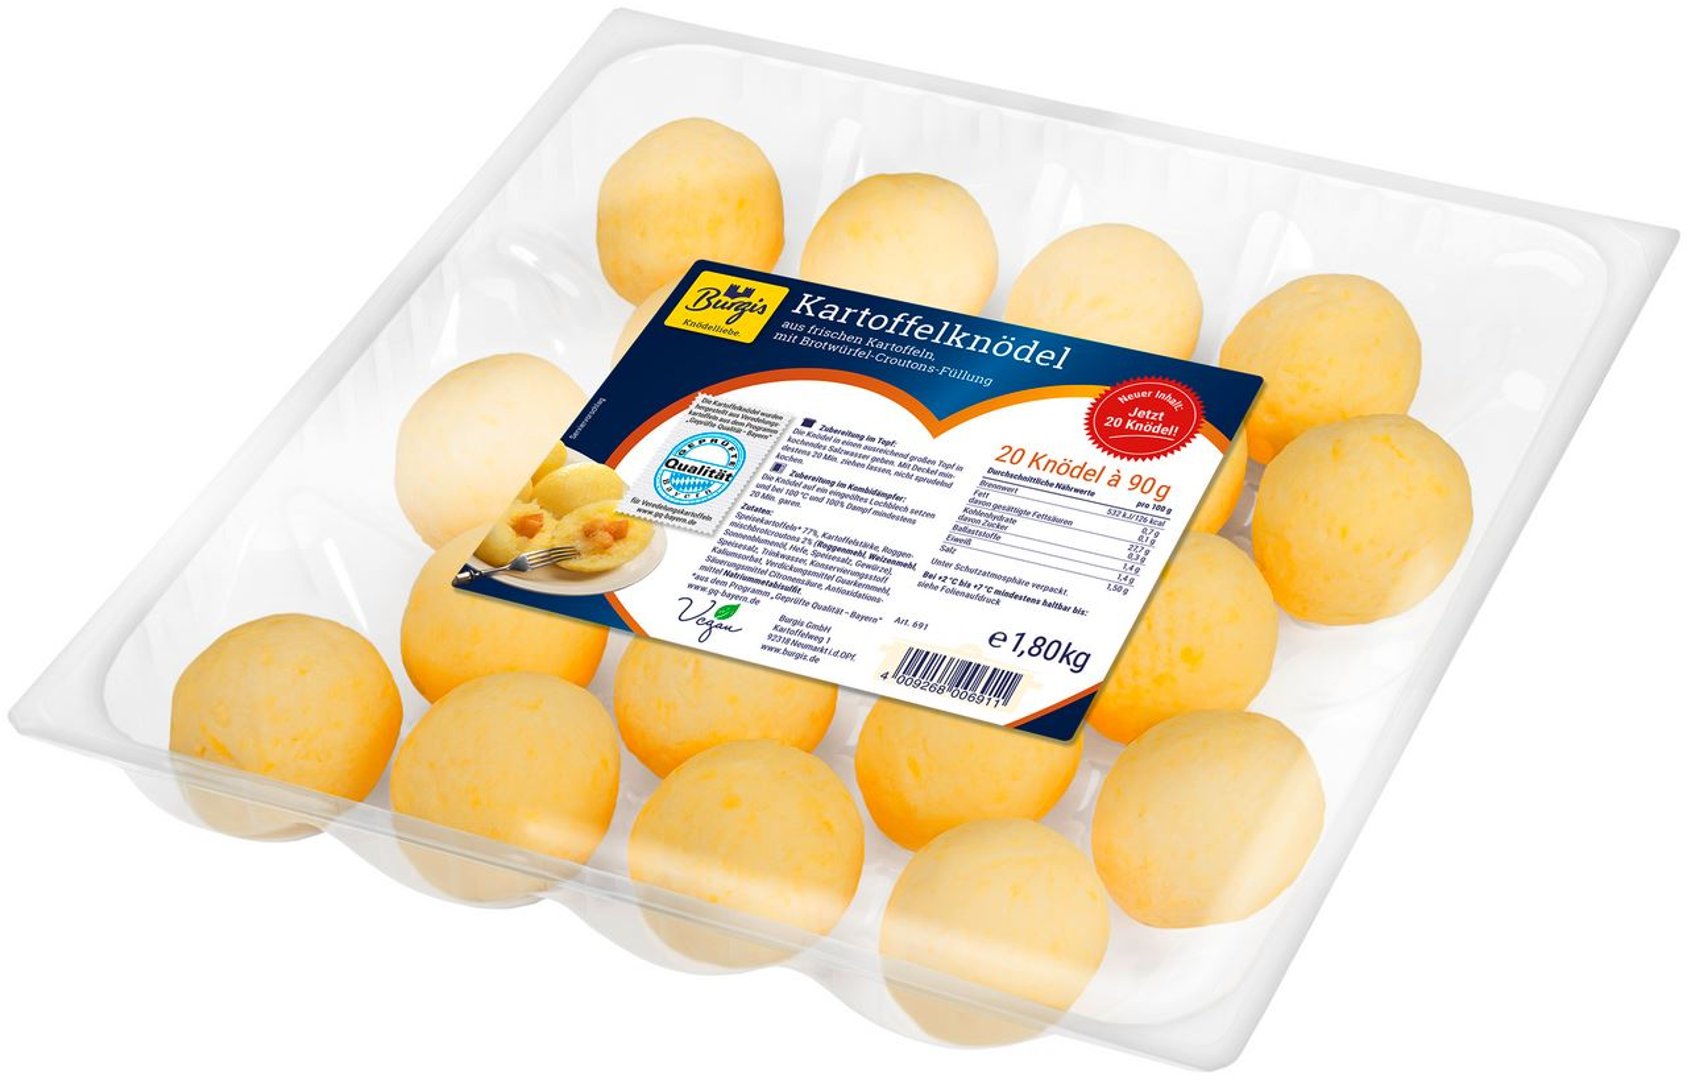 Burgis - Kartoffelknödel mit Brotwürfel-Croutons-Füllung, 20 Stück à 90 g - 1,8 kg Packung